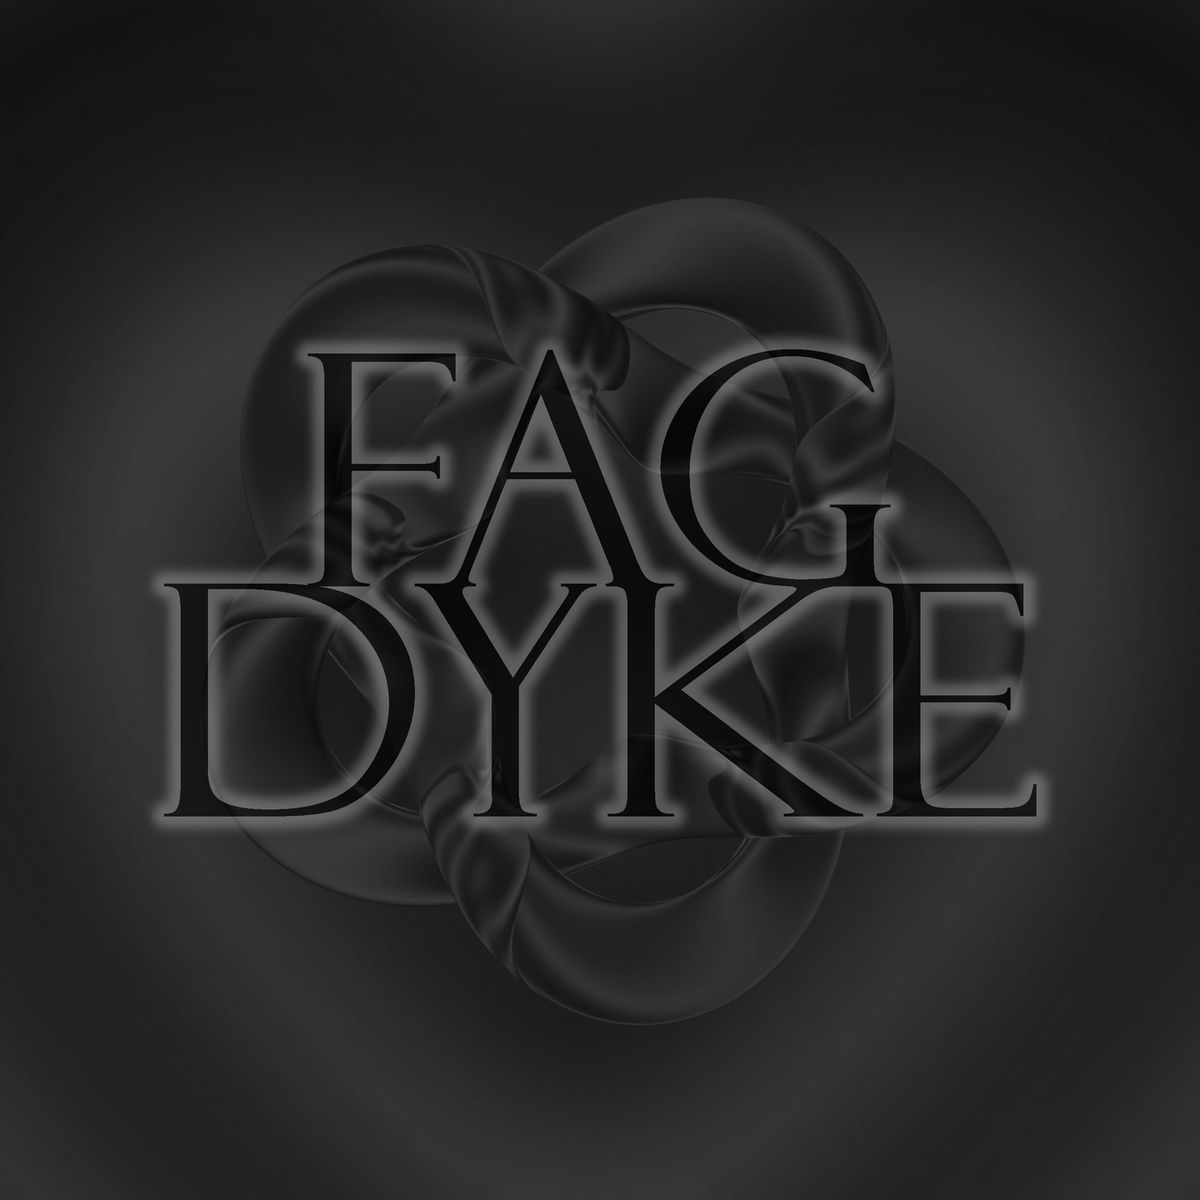 FAG-DYKE : Trans Social